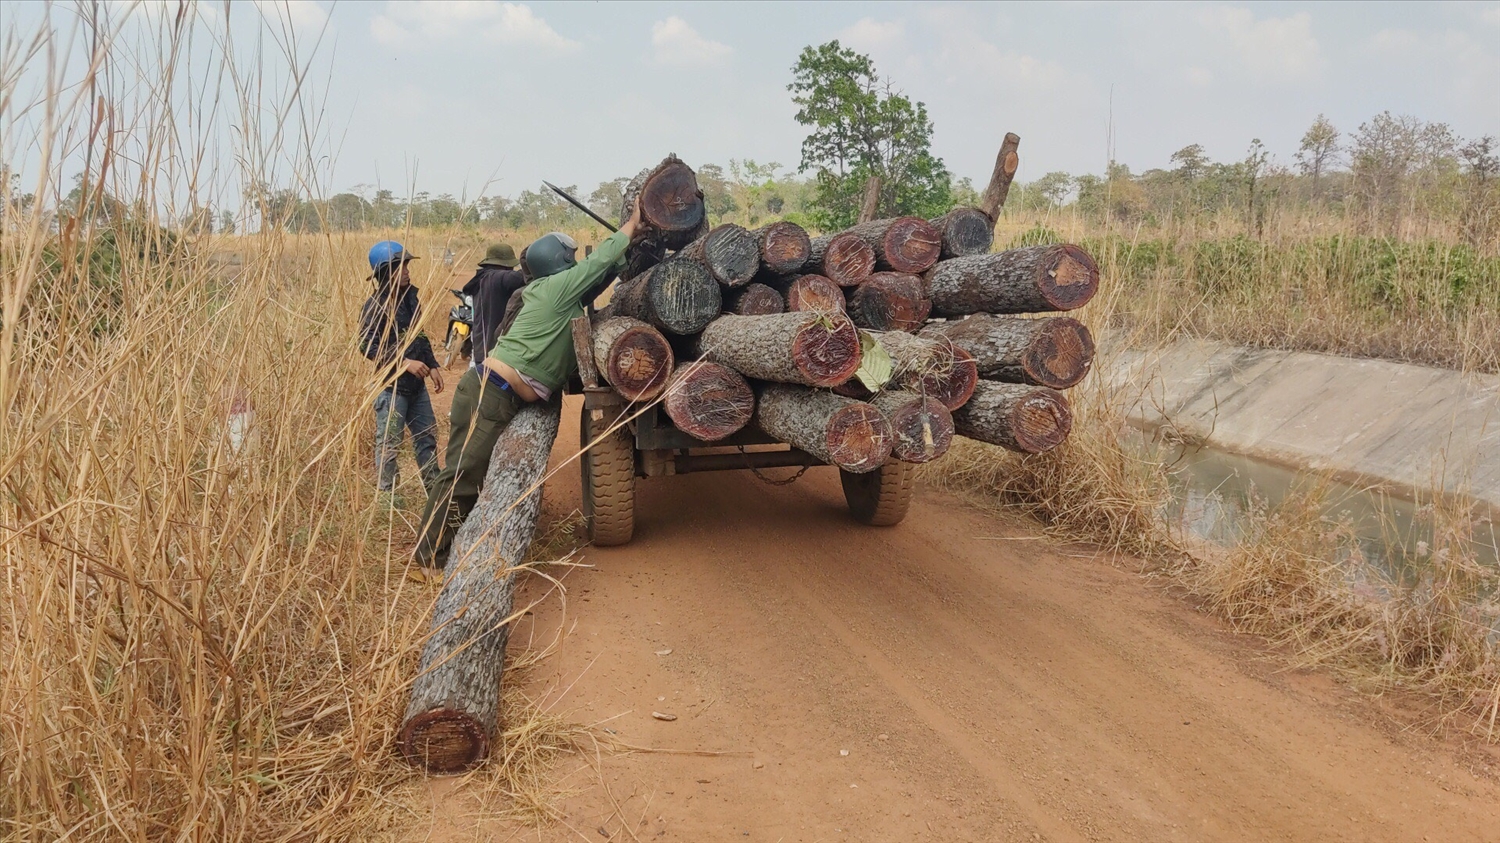 Lực lượng chức năng đưa tang vật vụ khai thác lâm sản trái phép tại tiểu khu 1003 về Ban Quản lý rừng phòng hộ Ia Meur